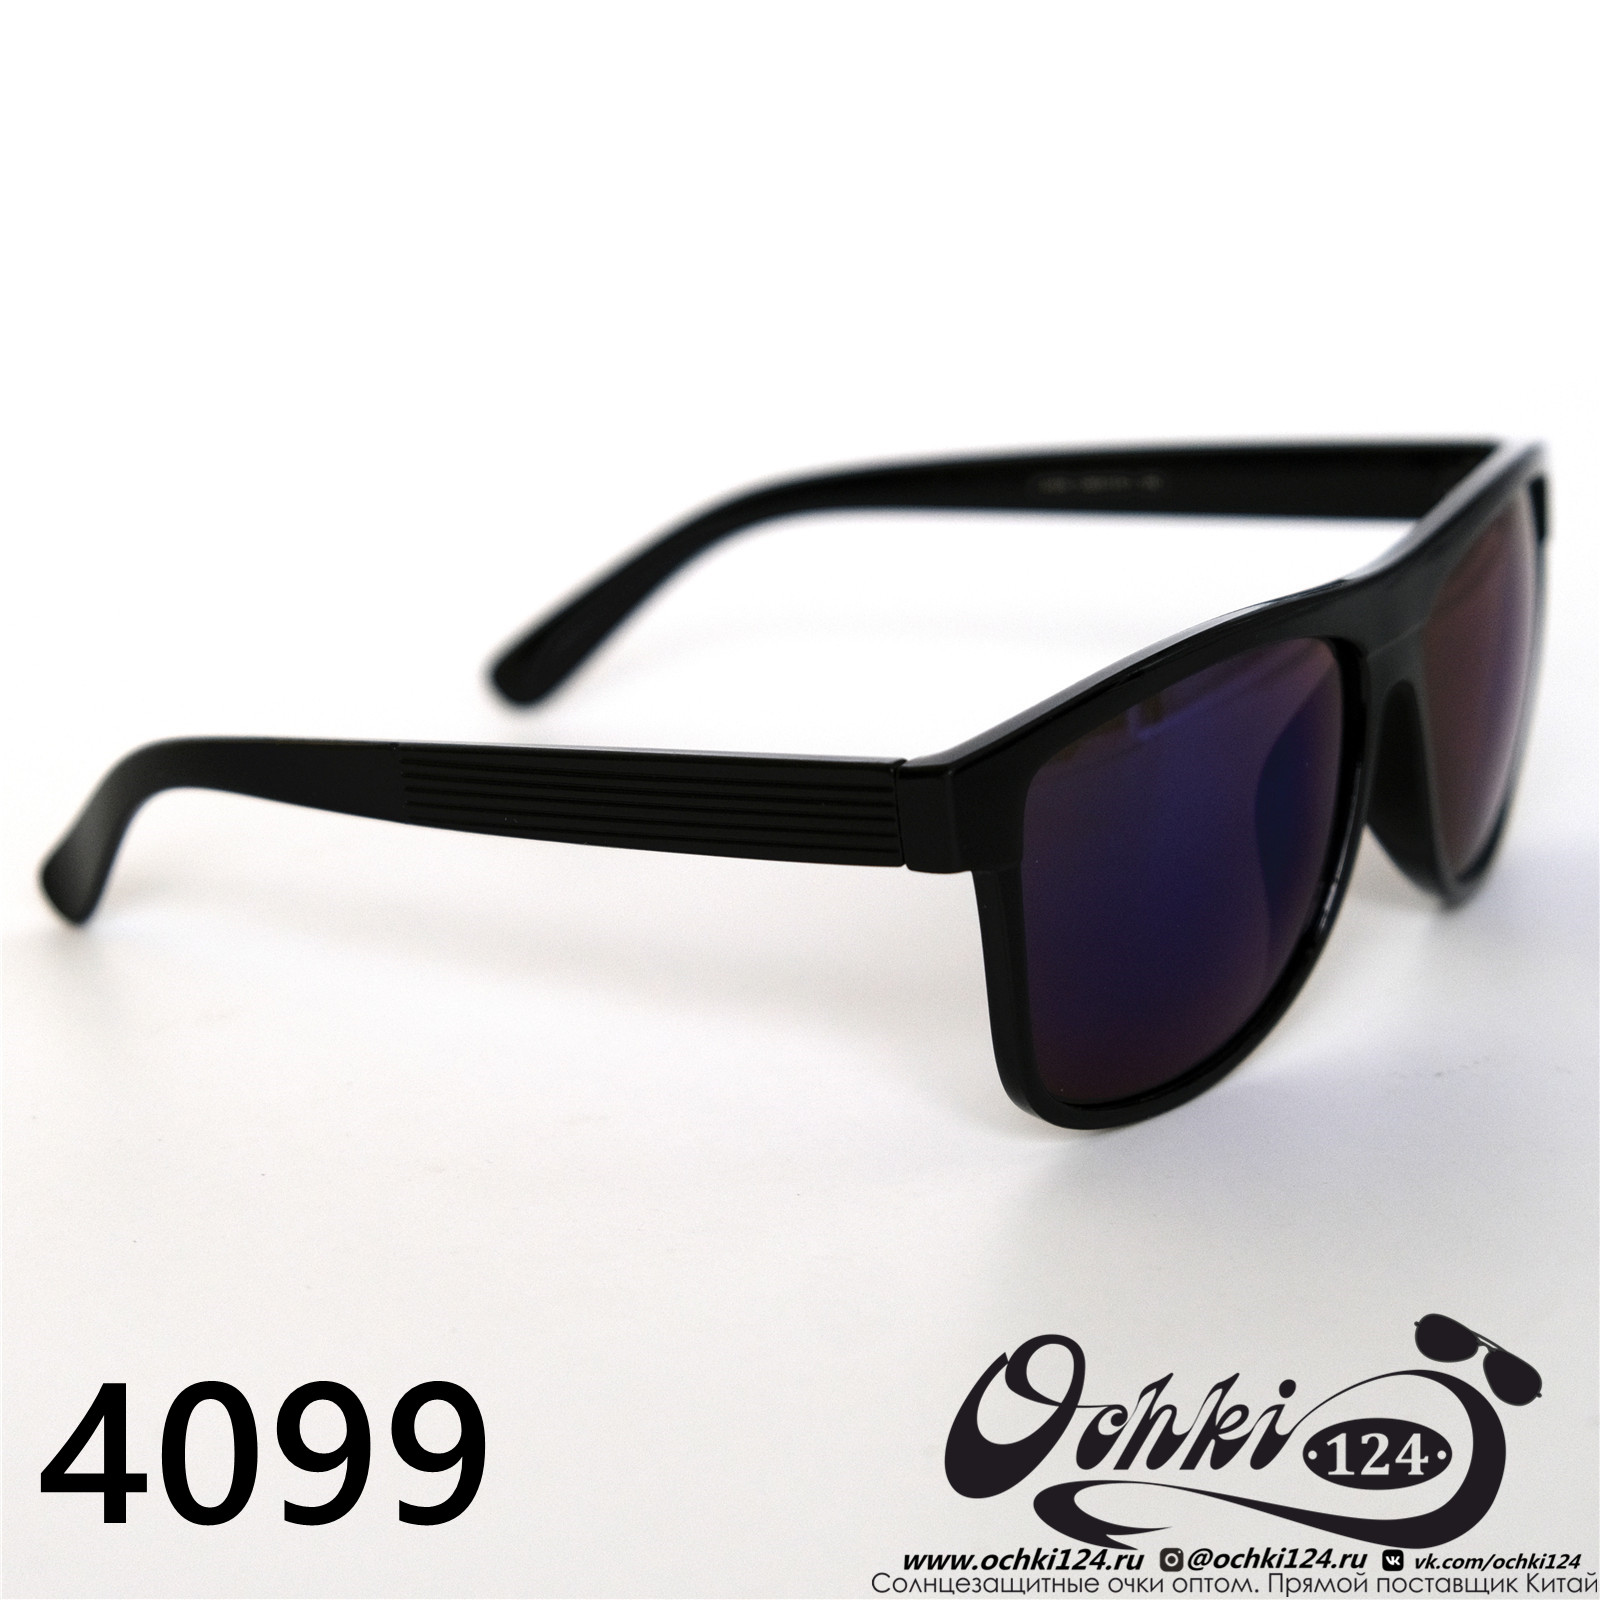  Солнцезащитные очки картинка 2022 Мужские Стандартные Materice 4099-6 